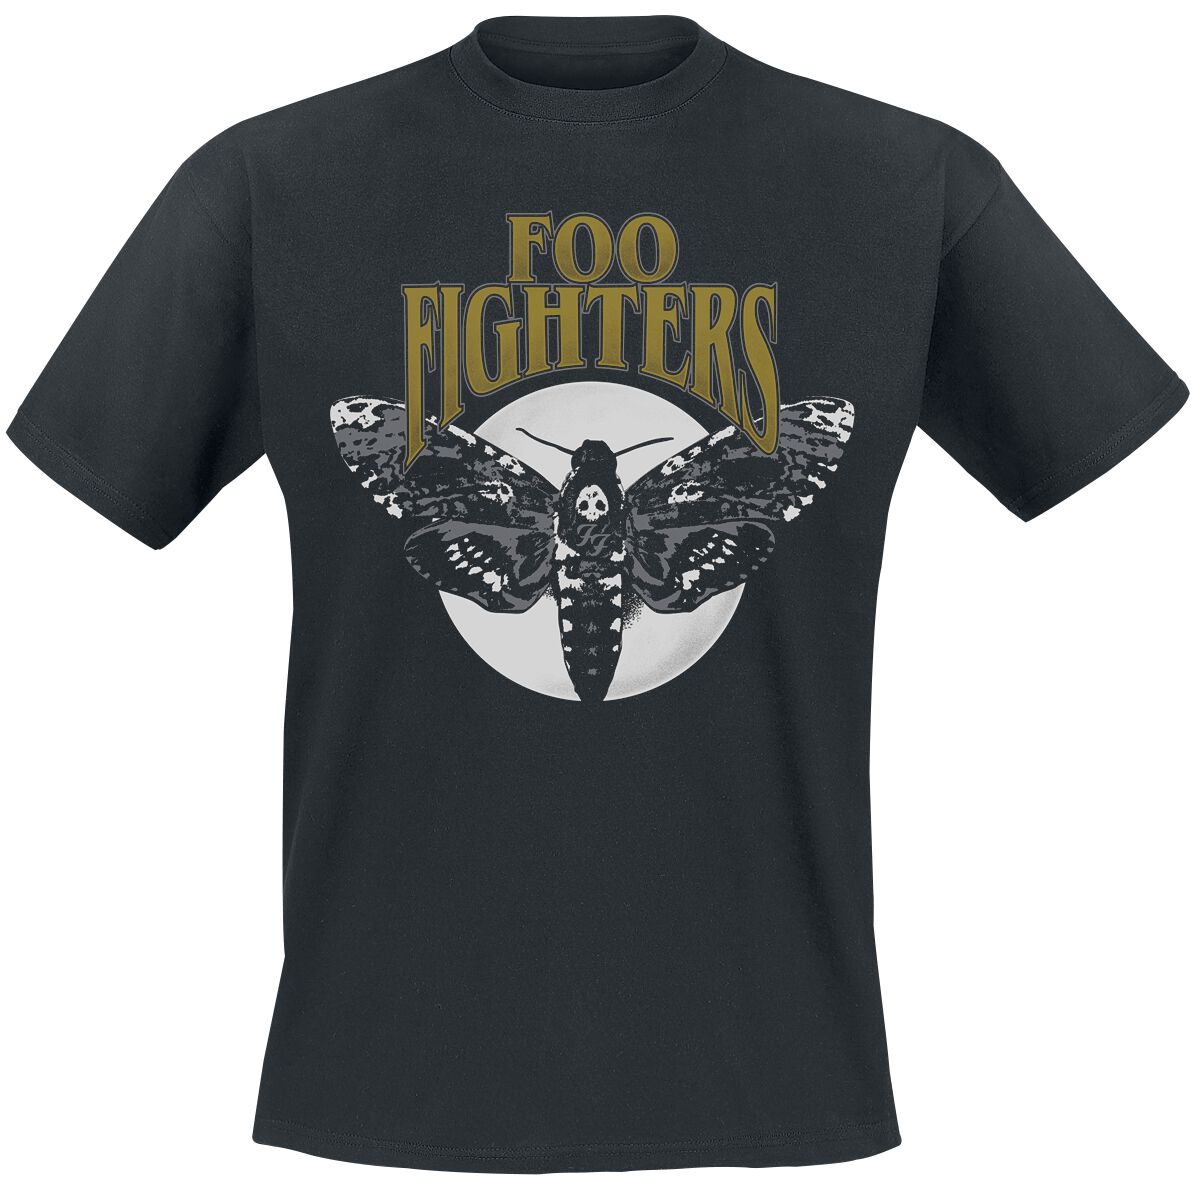 Foo Fighters T-Shirt - Hawk Moth - S bis XXL - für Männer - Größe XL - schwarz  - Lizenziertes Merchandise!